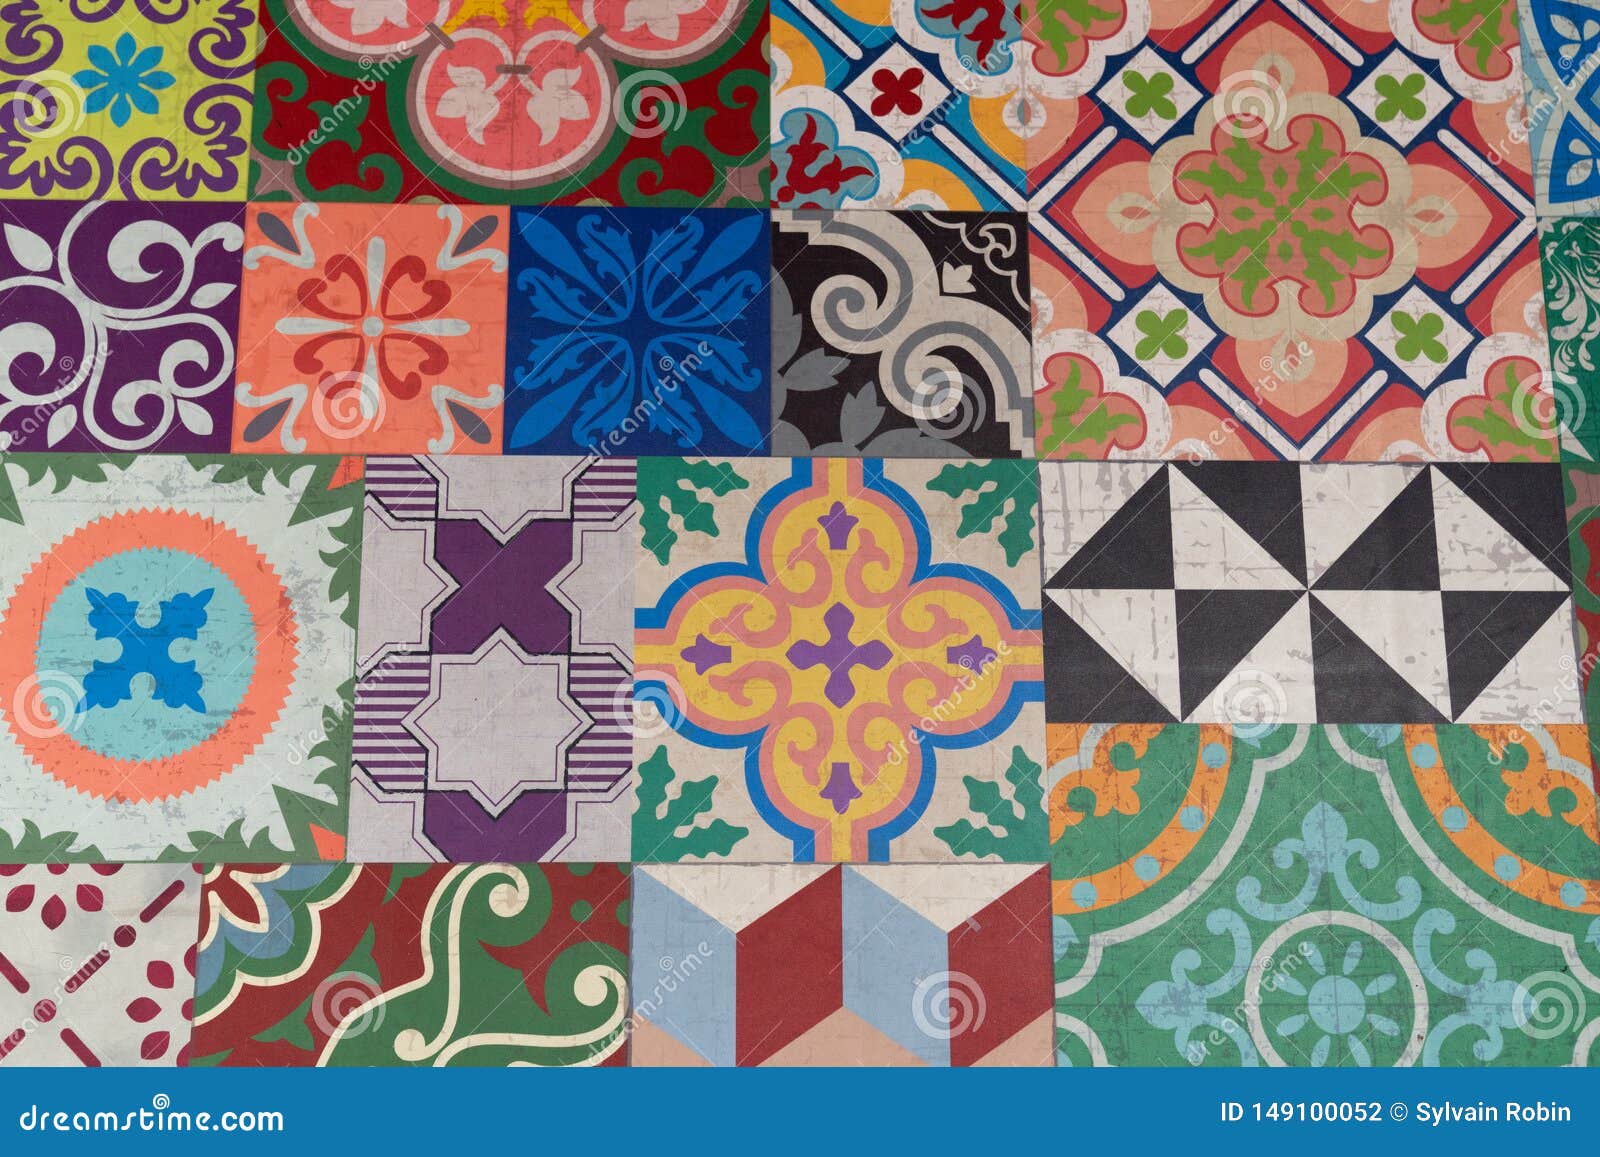 Portuguese Glazed Tiles Handmade Floor Tile Stock Photo - Image of ...